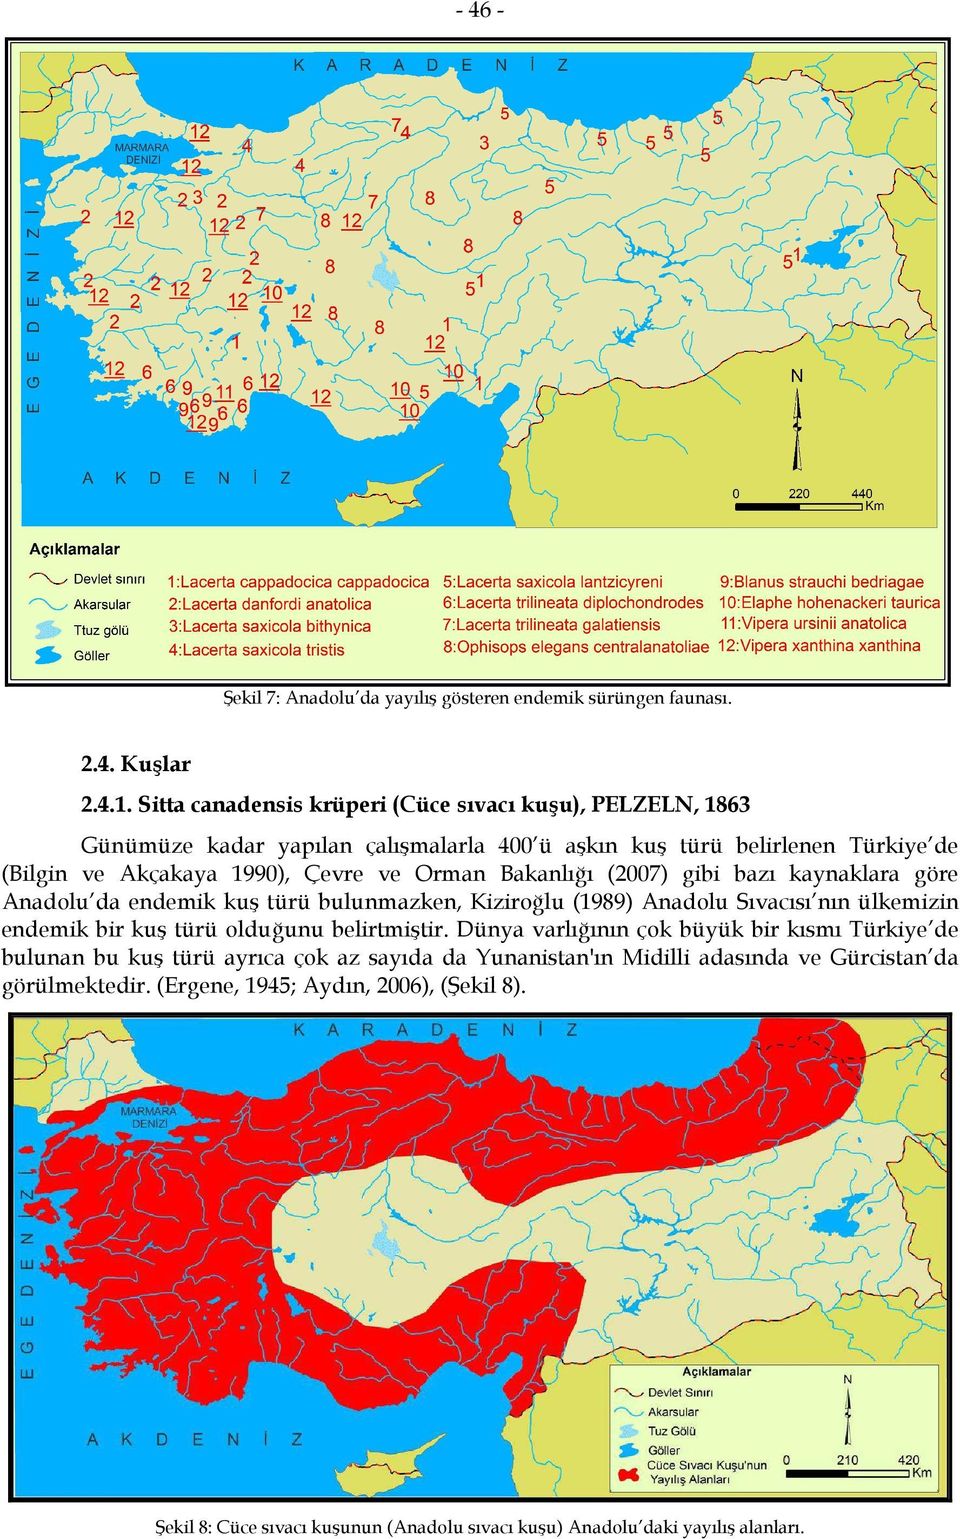 Bakanlığı (2007) gibi bazı kaynaklara göre Anadolu da endemik kuş türü bulunmazken, Kiziroğlu (1989) Anadolu Sıvacısı nın ülkemizin endemik bir kuş türü olduğunu belirtmiştir.